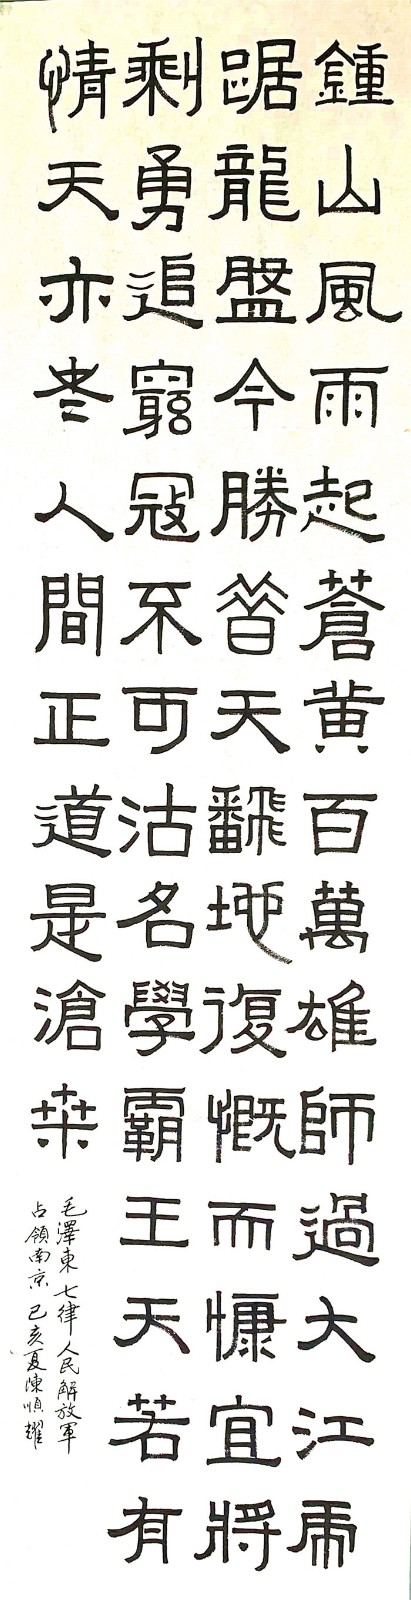 喜迎新中国成立70周年华诞—2019陈顺耀的中国书法、绘画作品展示